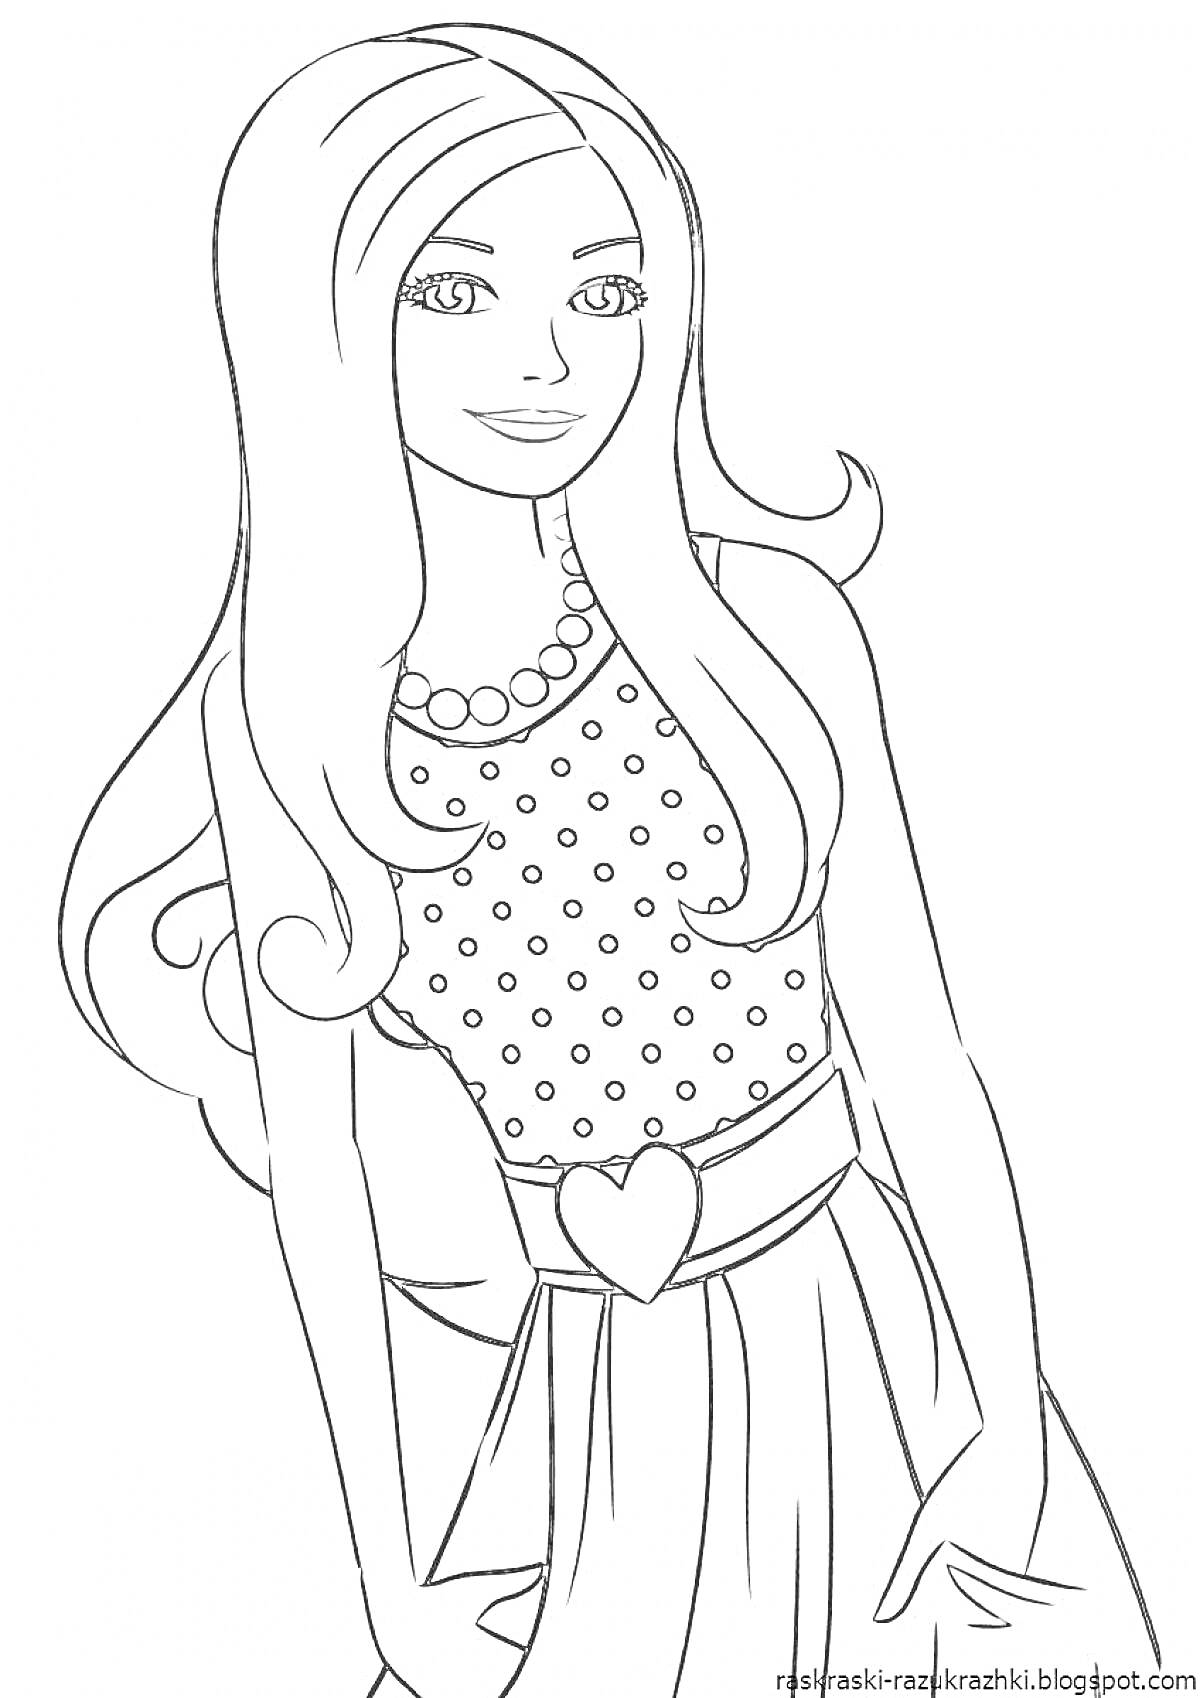 Раскраска Девушка с длинными волосами в наряде с сердечком на поясе и в горошковом топе